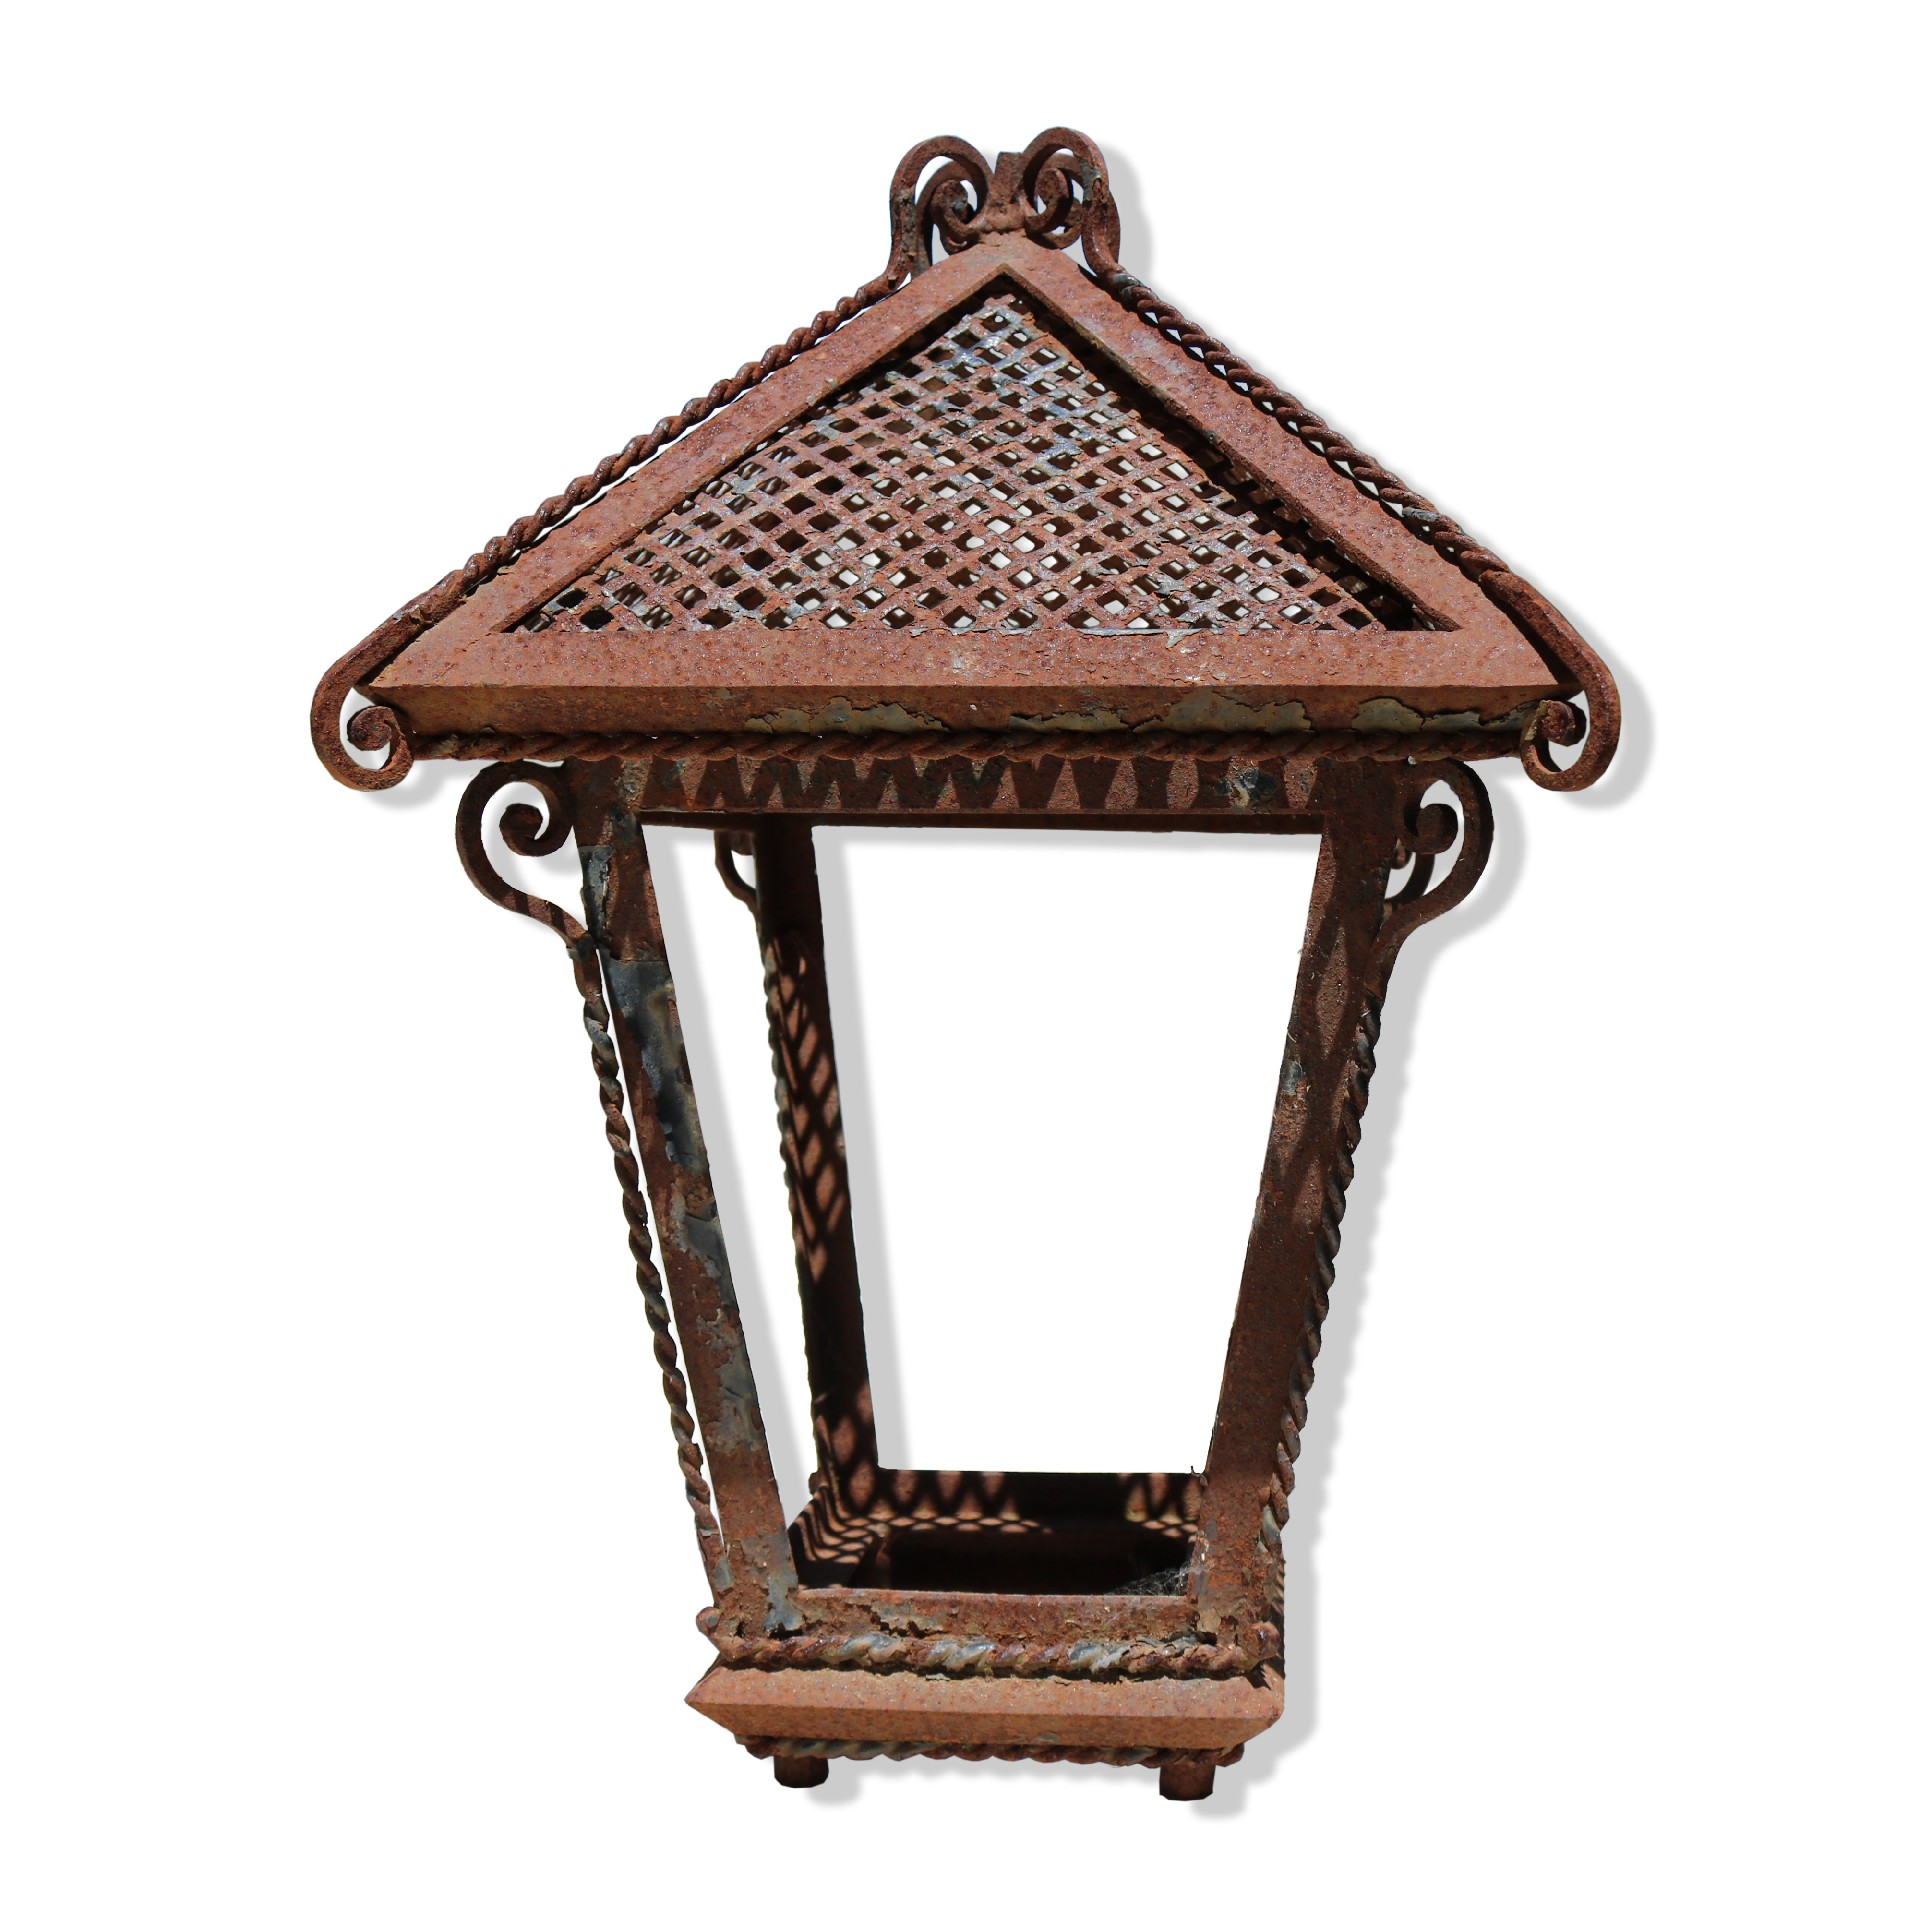 Antica lanterna in ferro - Lampioni Antichi - Arredo Giardino - Prodotti - Antichità Fiorillo